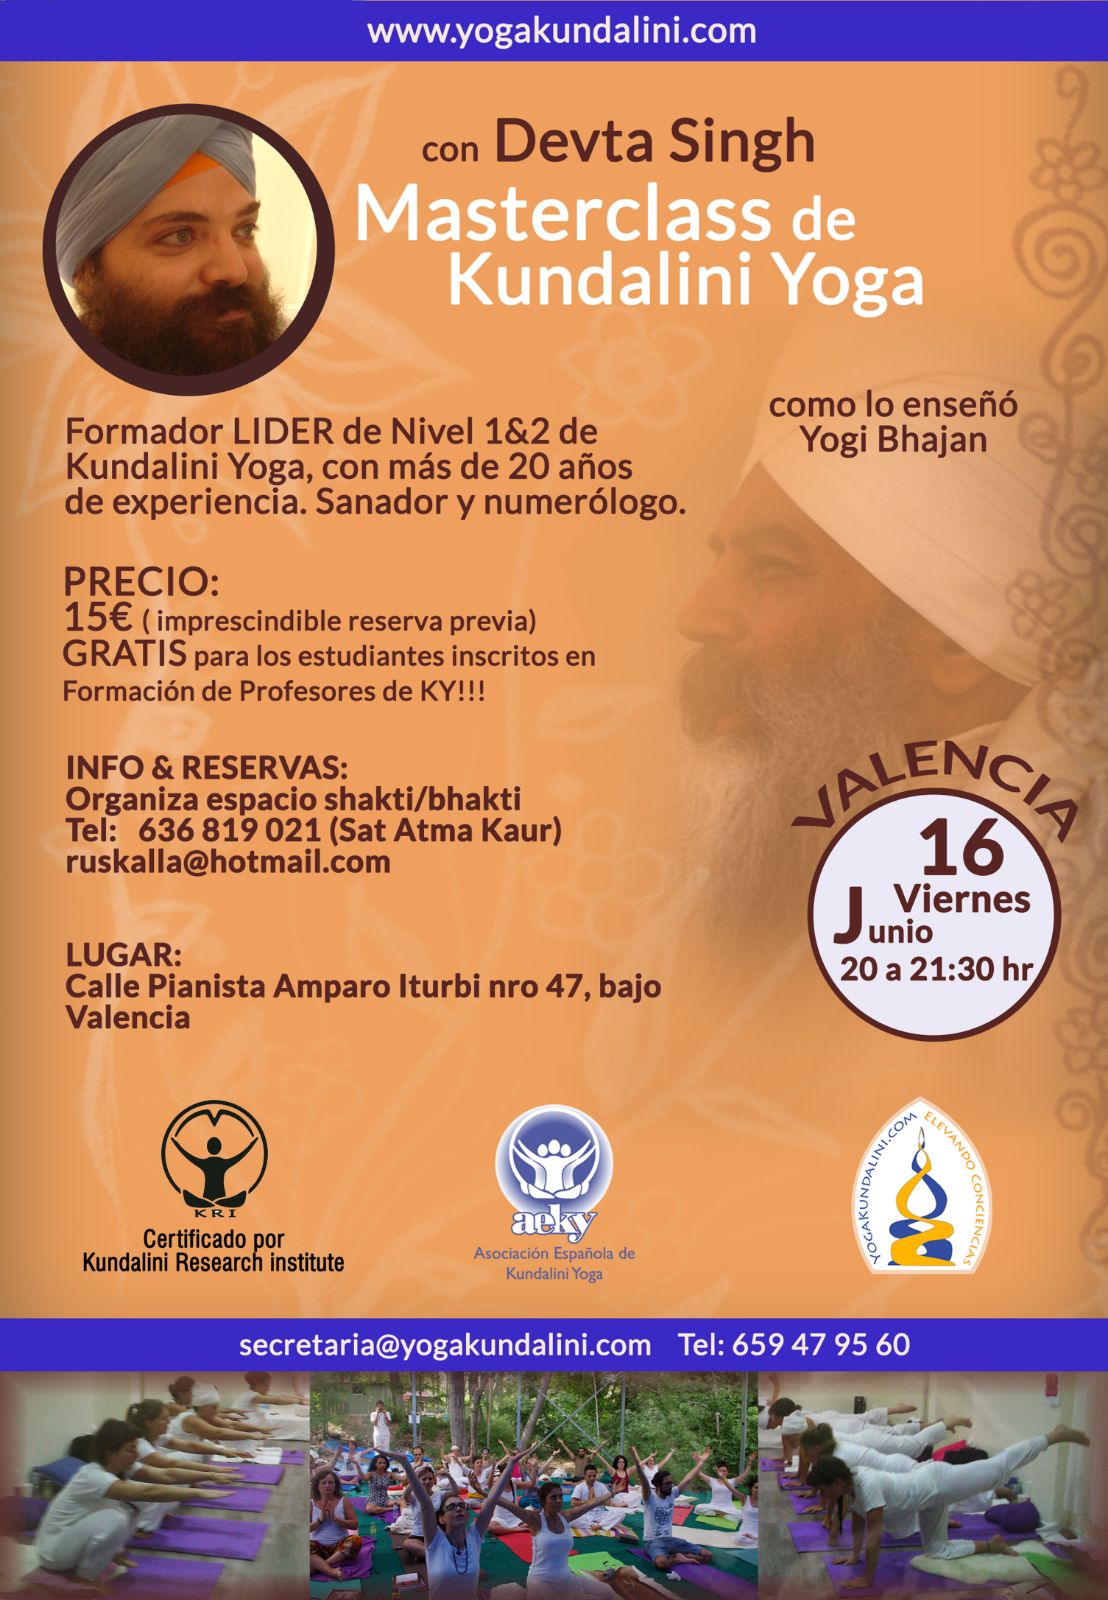 kundalinijunio Viernes 16 de Junio: Master de Kundalini Yoga